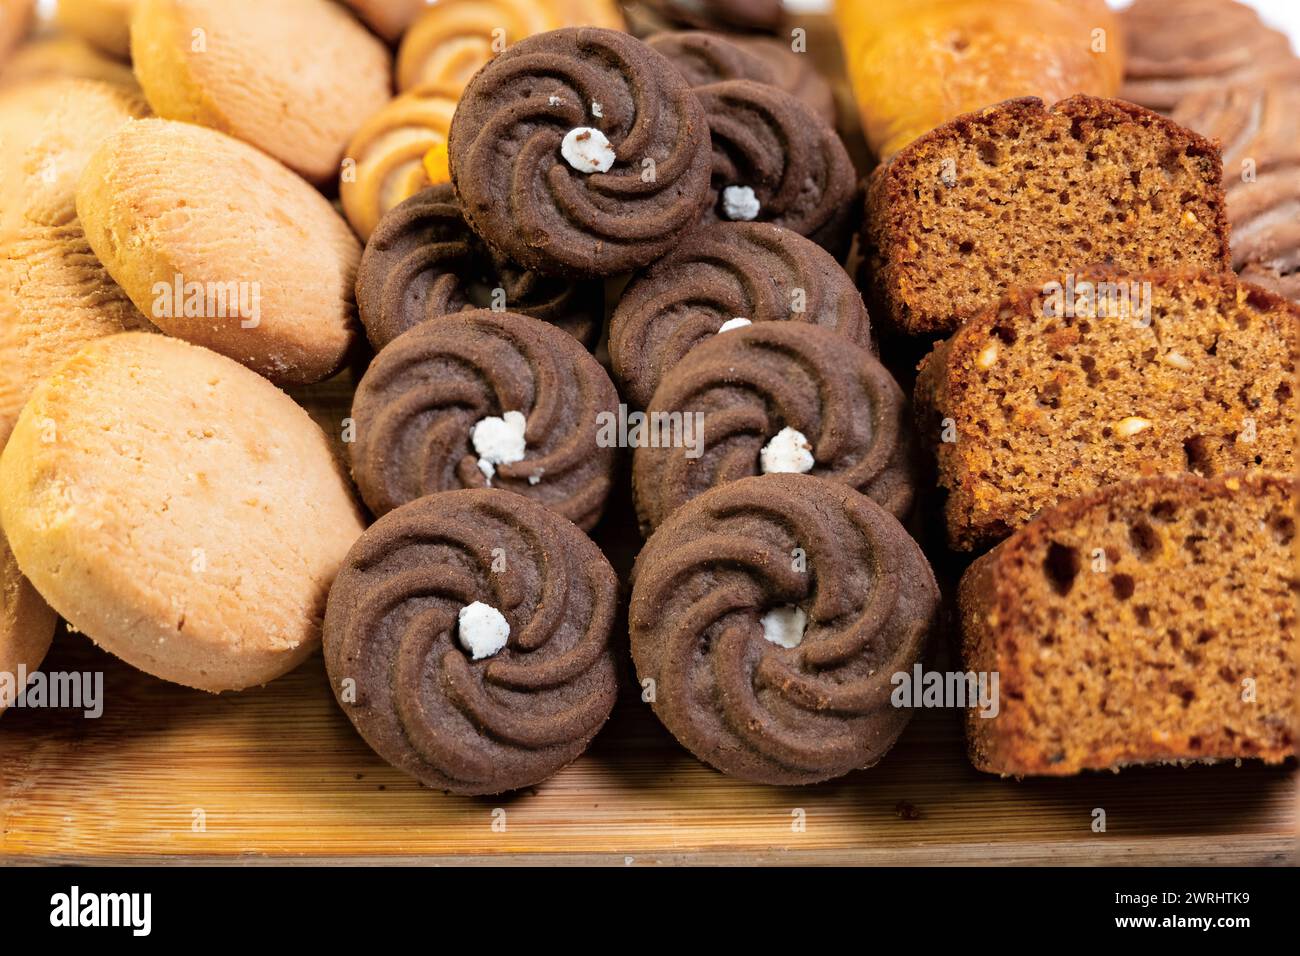 Une vue rapprochée d'une délicieuse sélection de produits de boulangerie, y compris des pains, des pâtisseries et des biscuits, tous affichés sur une charmante planche de bois rustique Banque D'Images